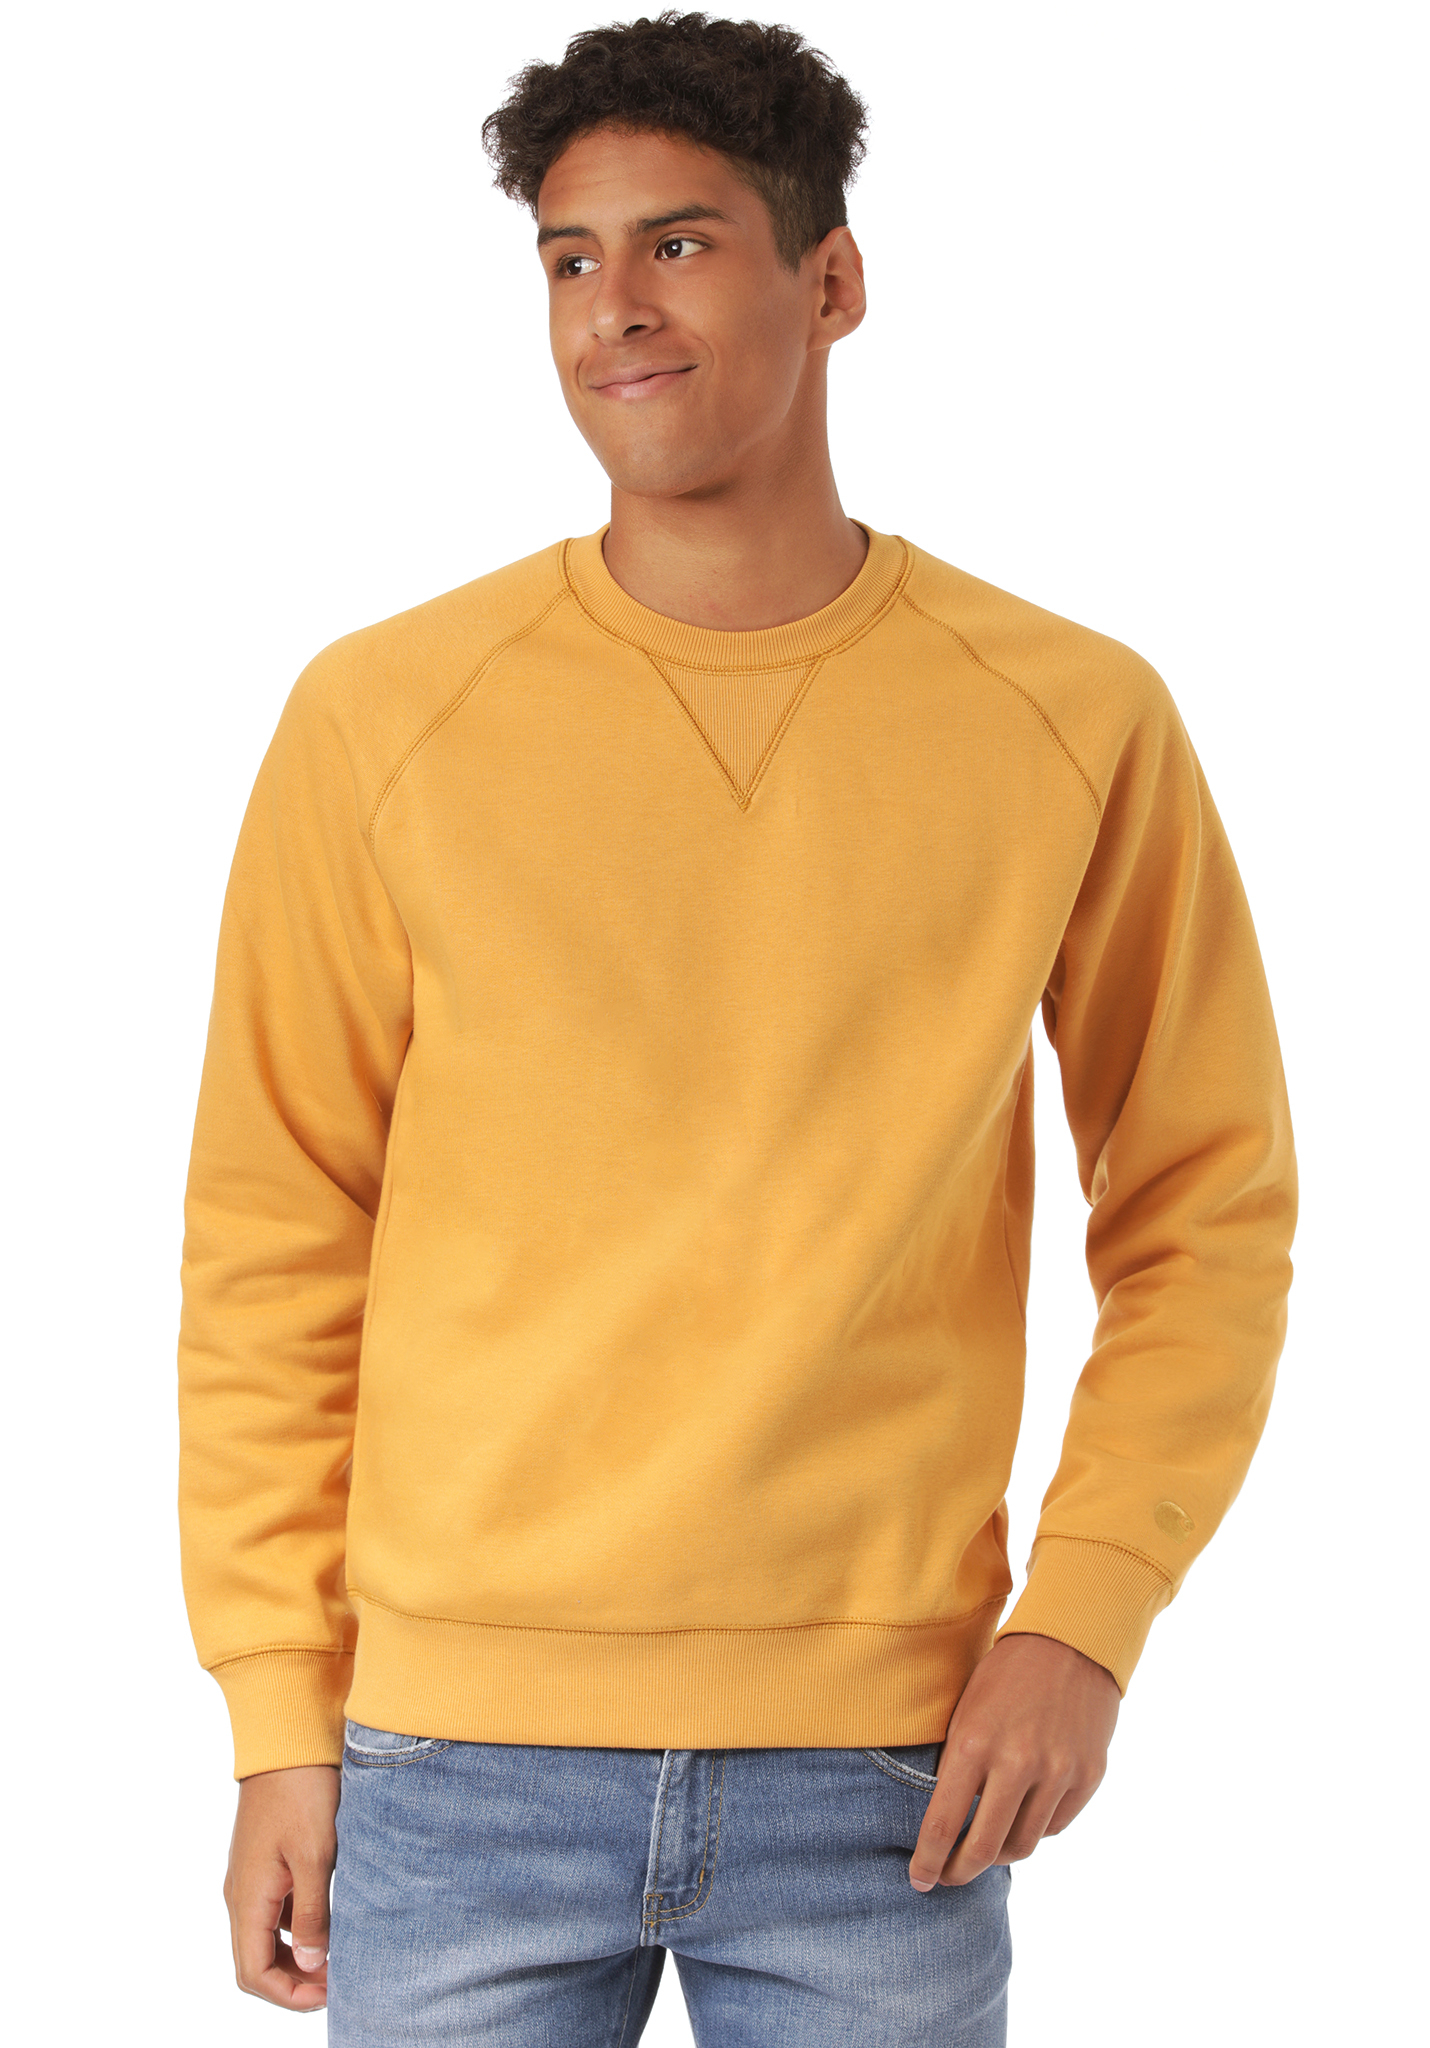 Carhartt WIP Chase Sweatshirt yellow XXL